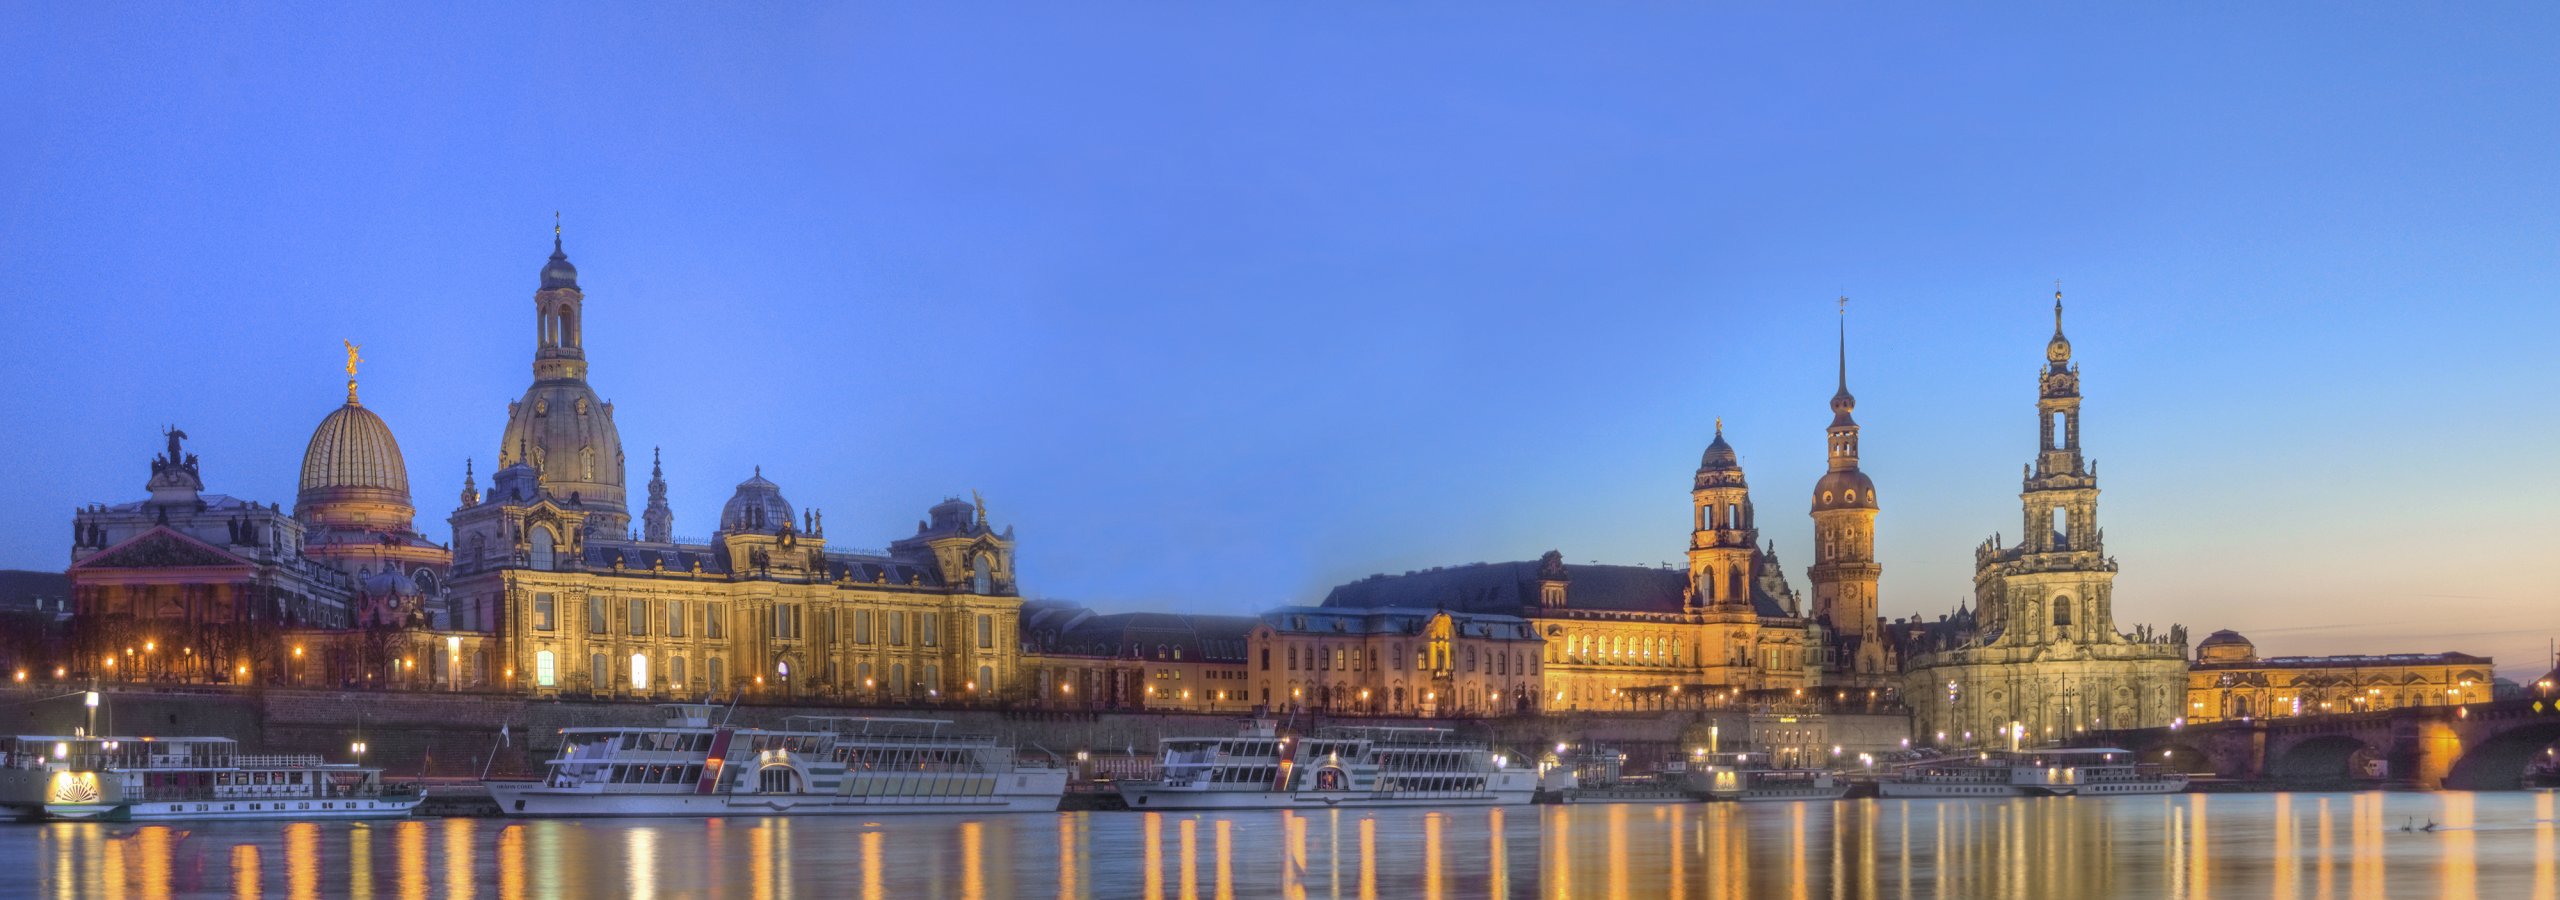 Dresden Elbe river smaller